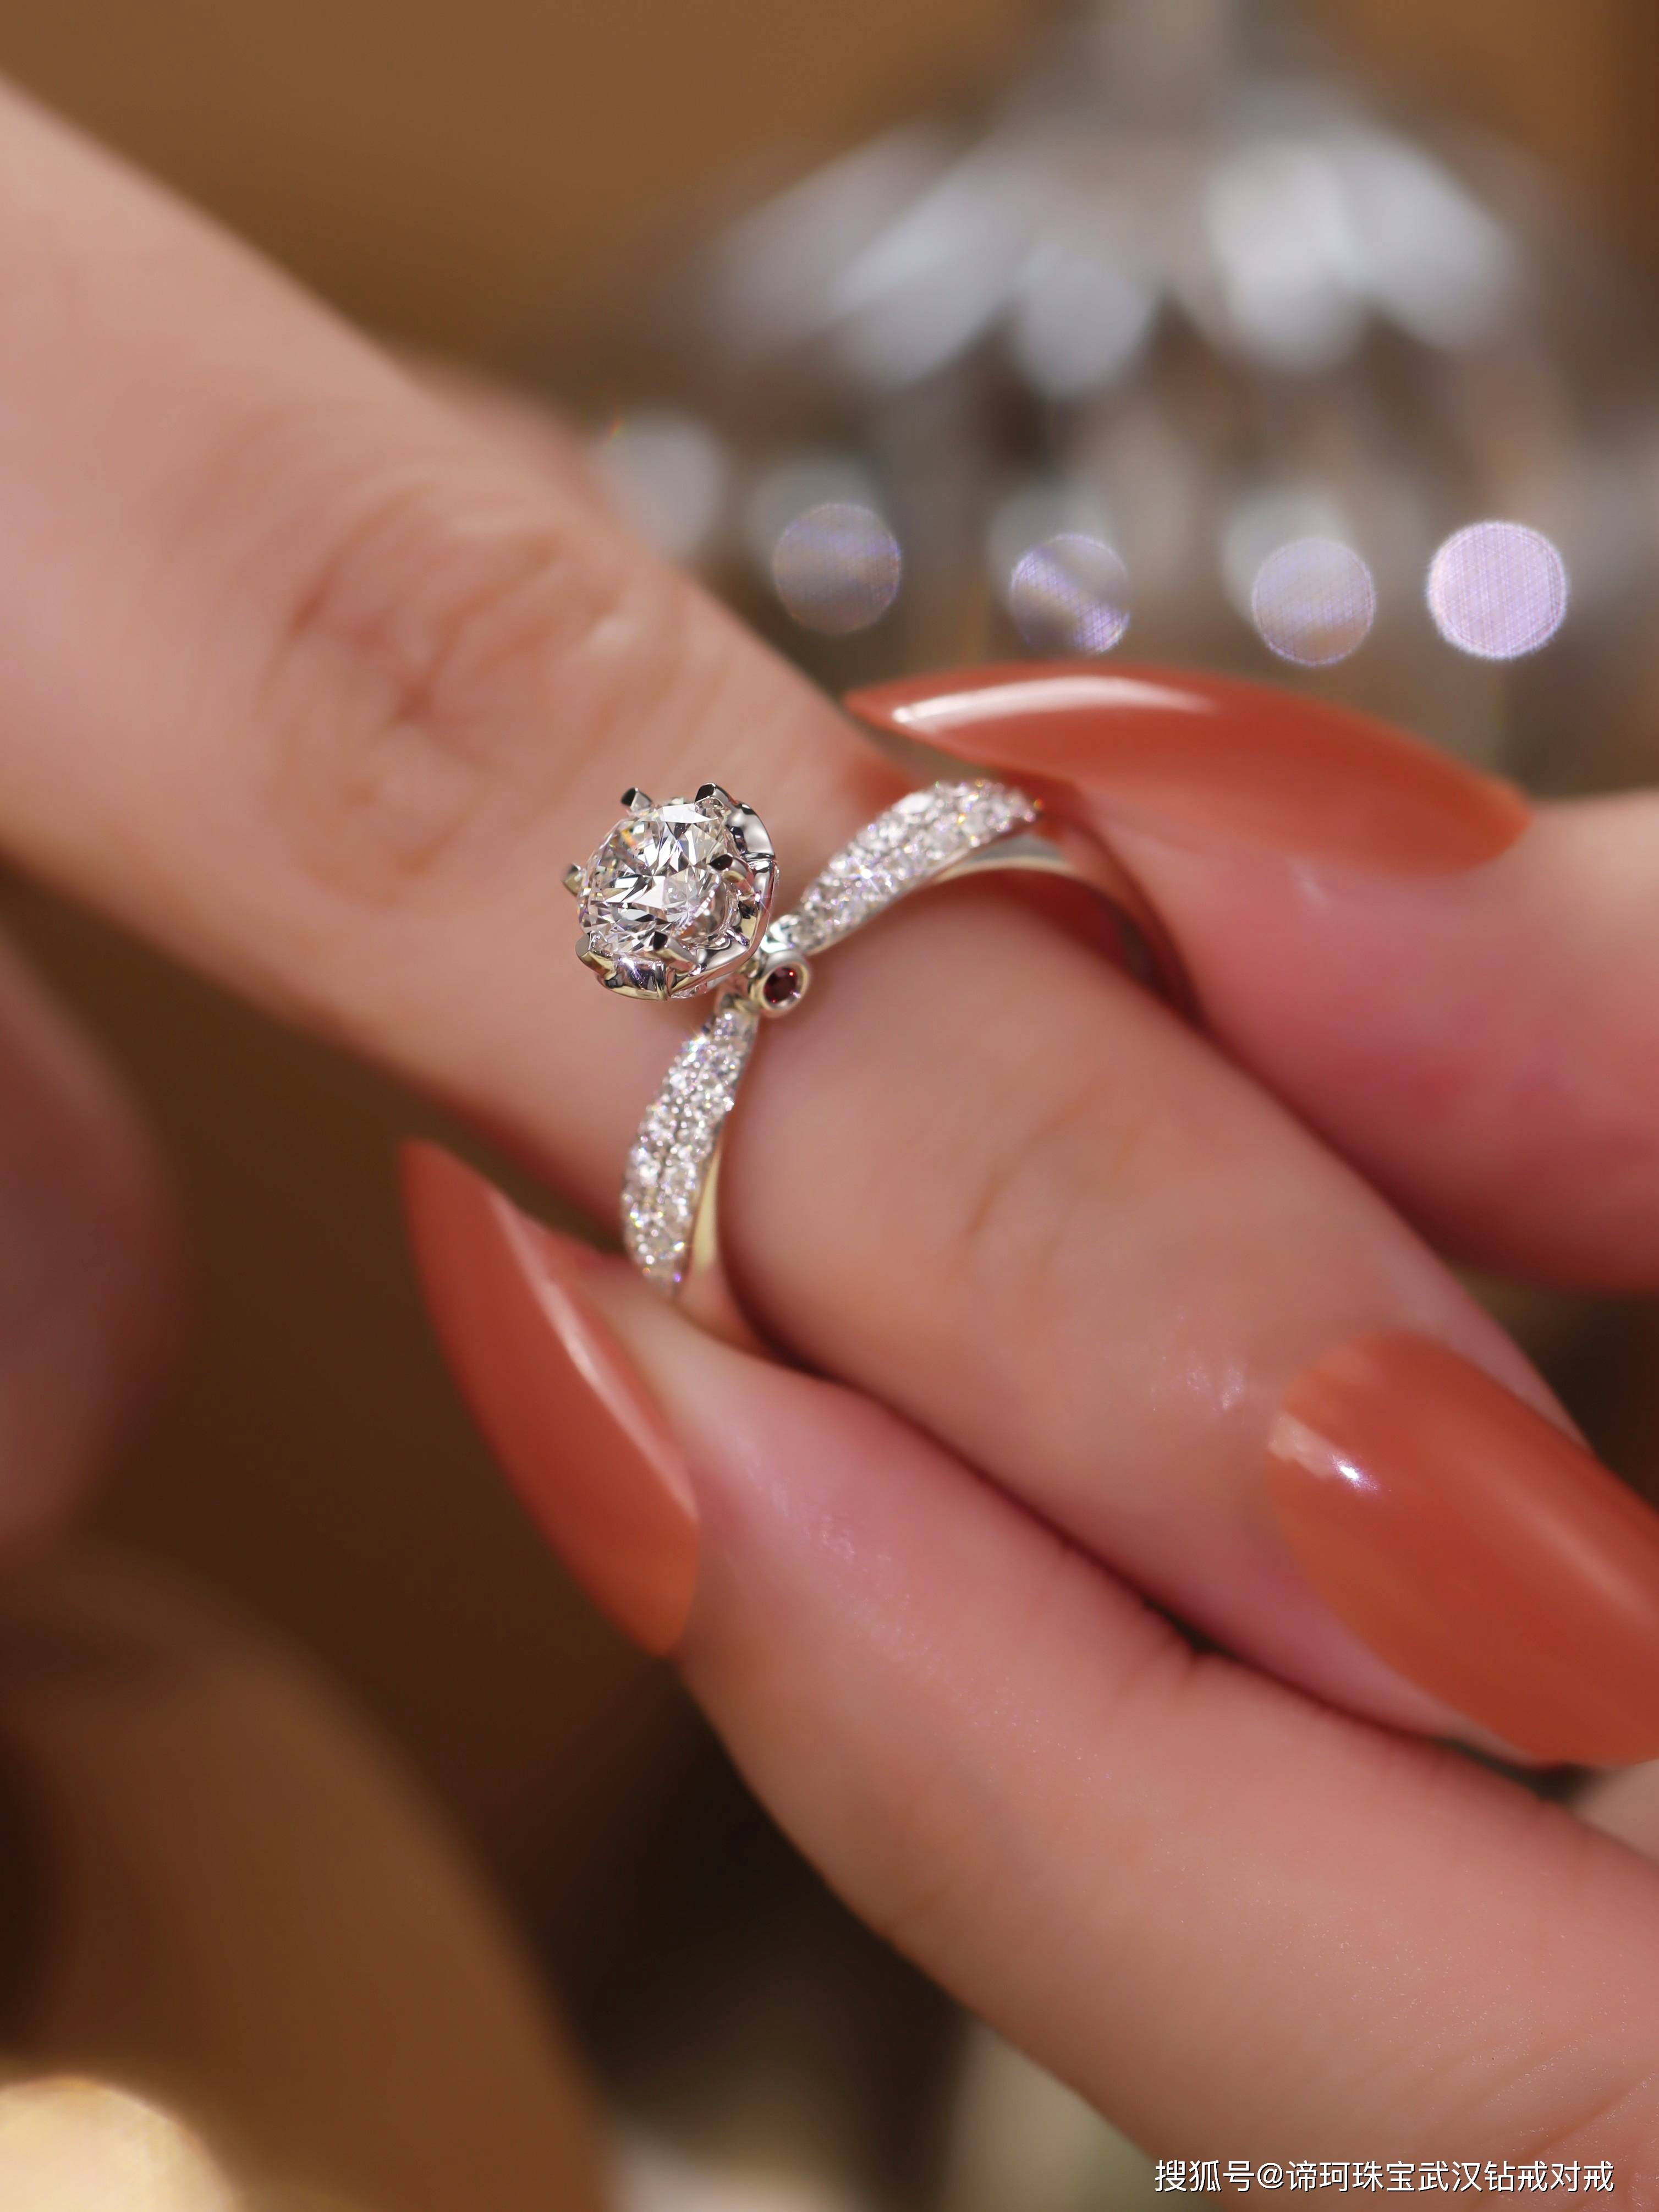 高清图|蒂芙尼铂金六爪镶嵌订婚钻戒戒指图片15|腕表之家-珠宝